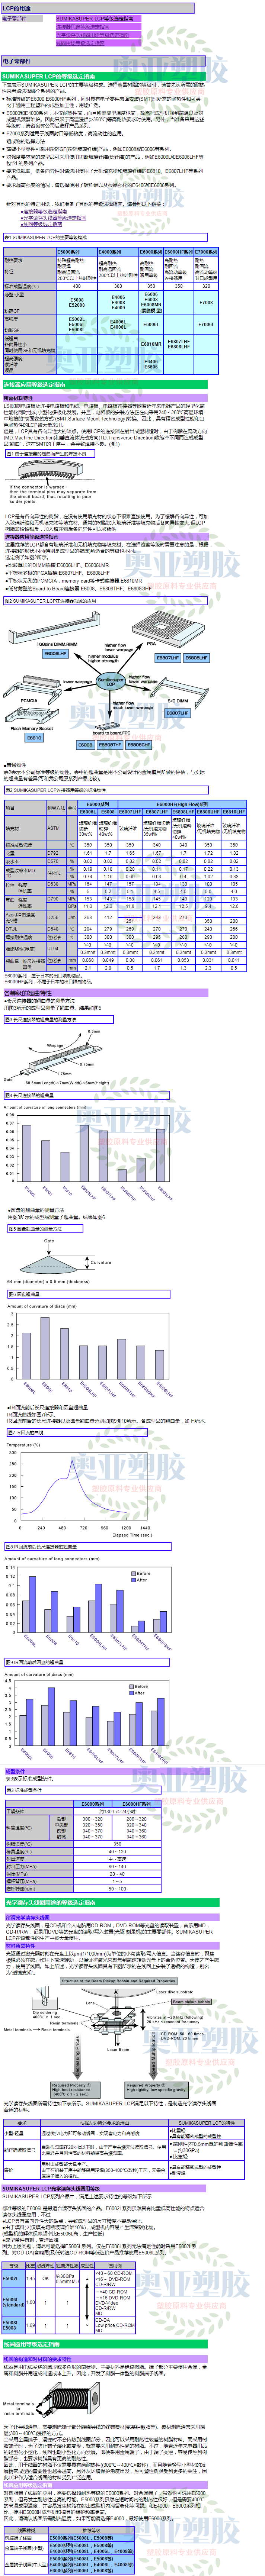 日本住友化学LCP应用拼接图2020图1.png